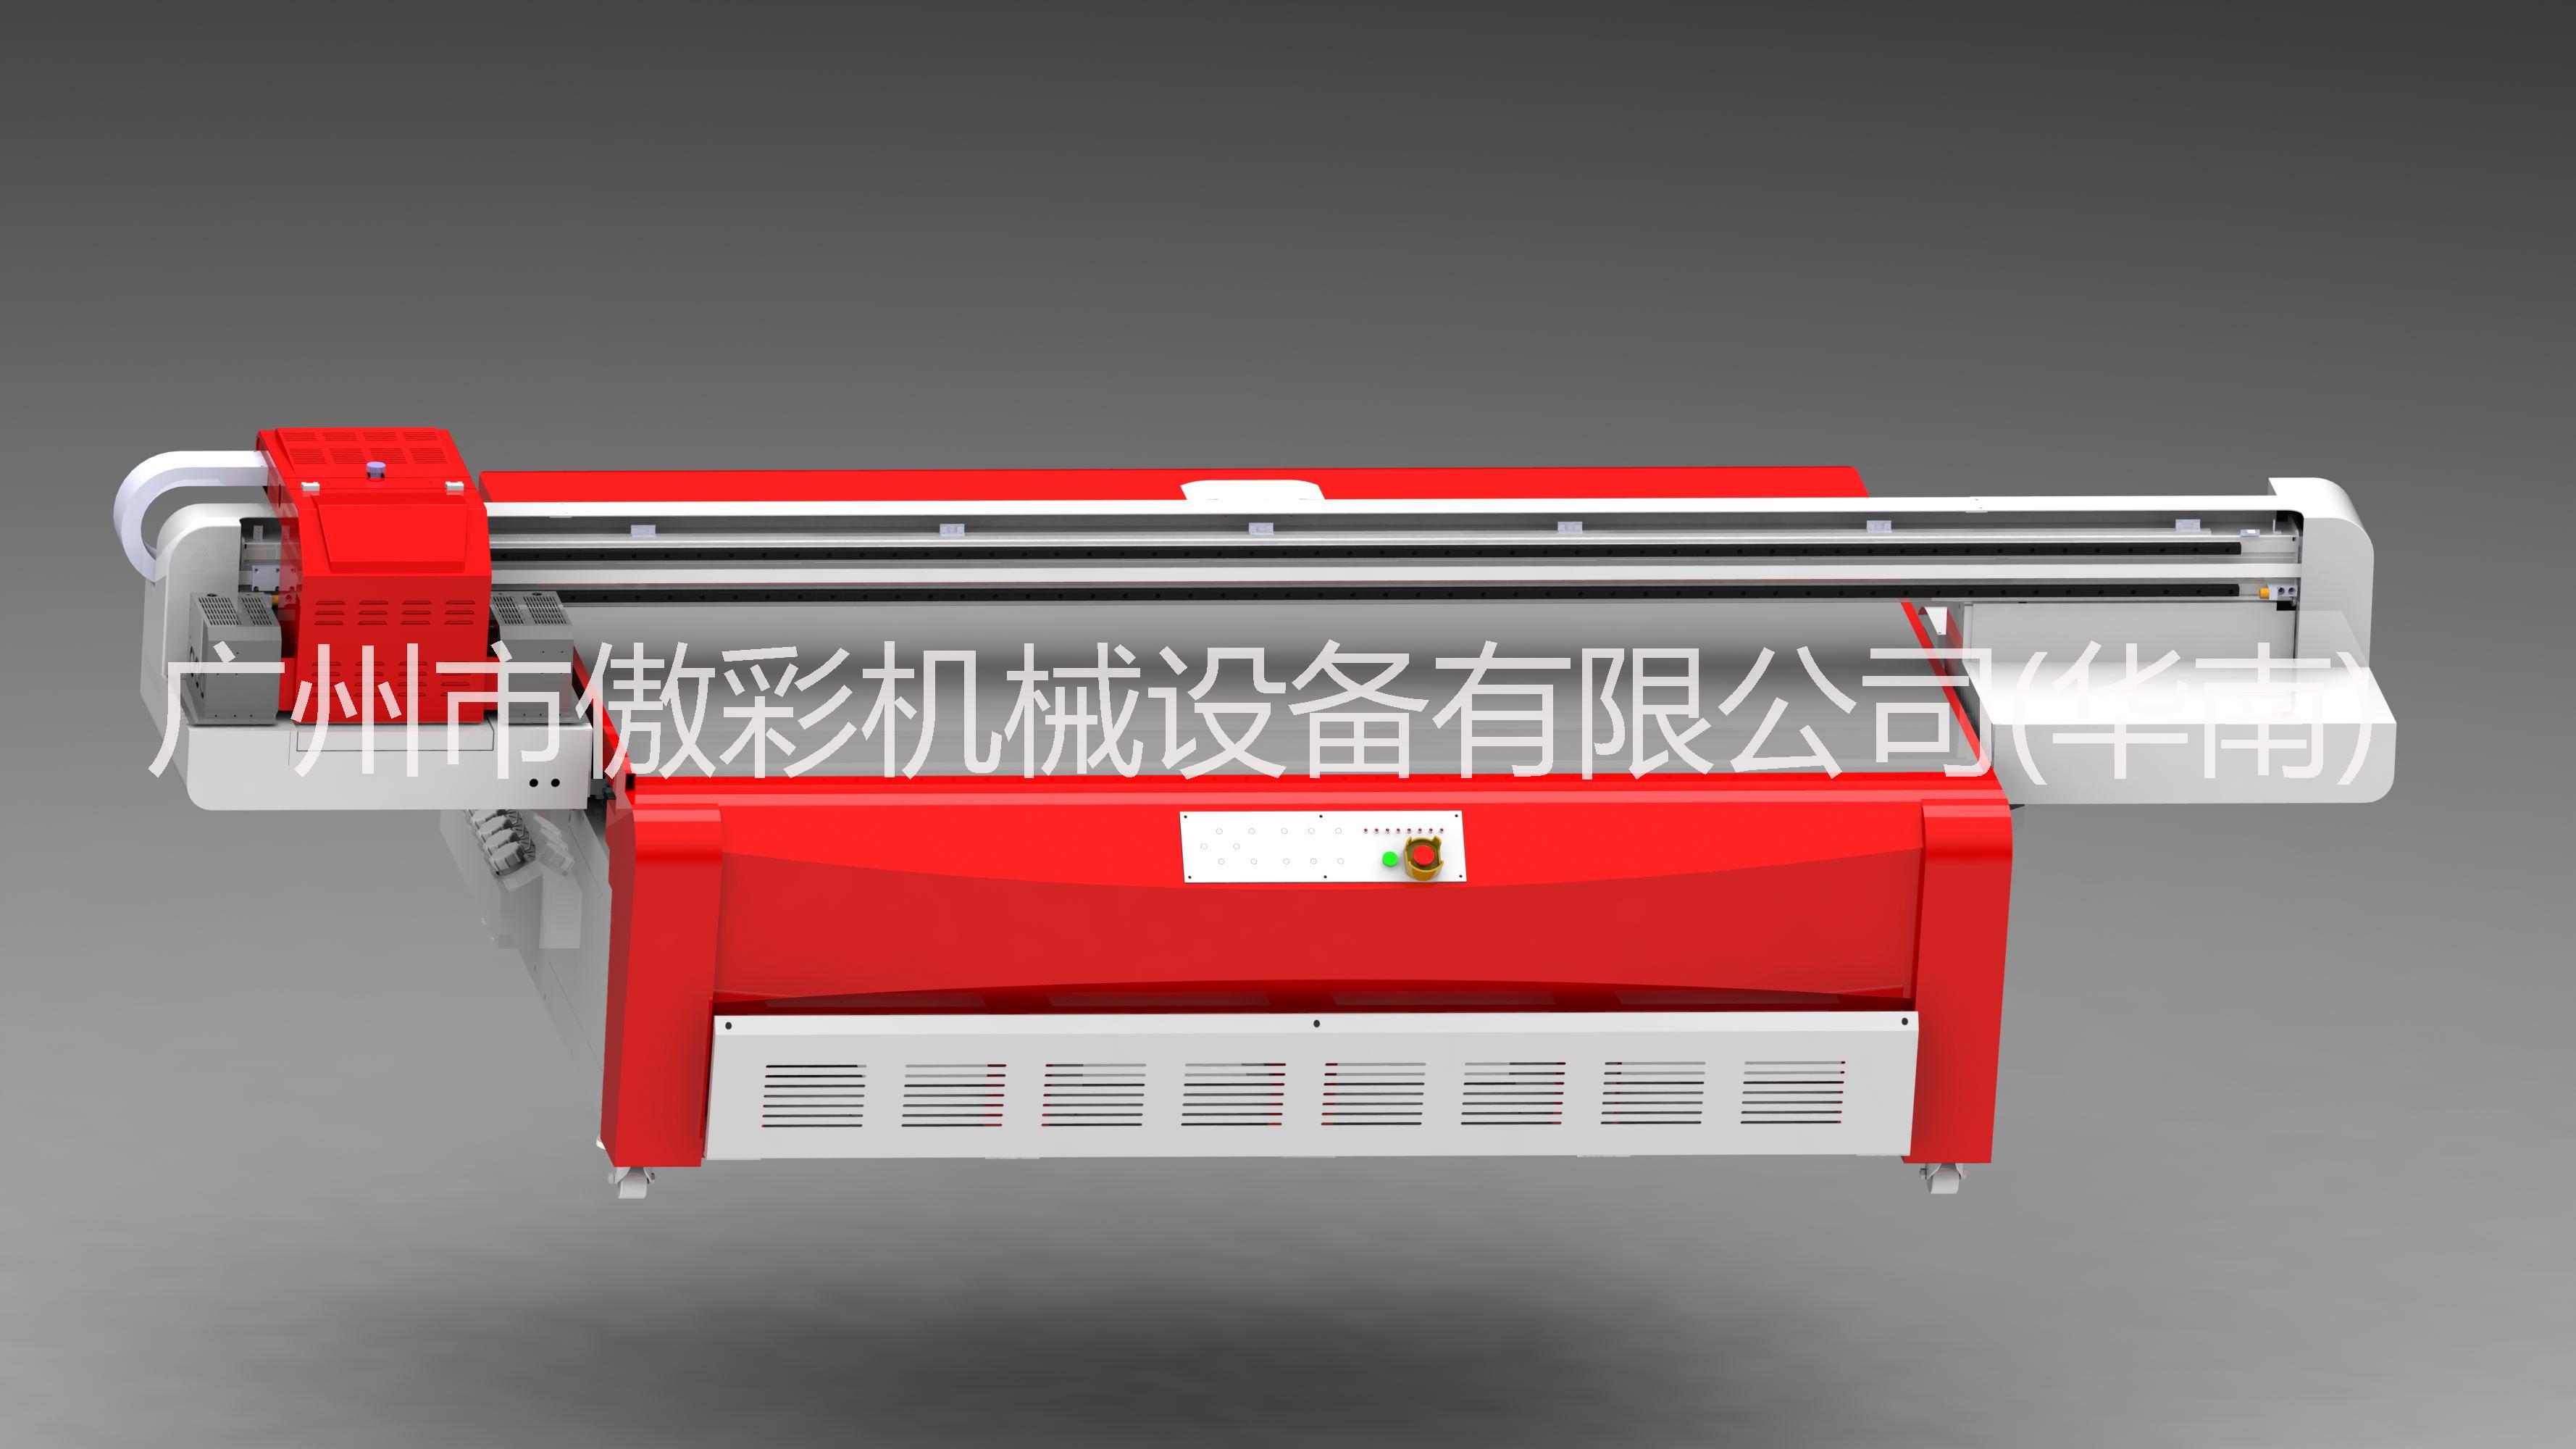 供应万能打印机东芝2513可用于各种平面彩印